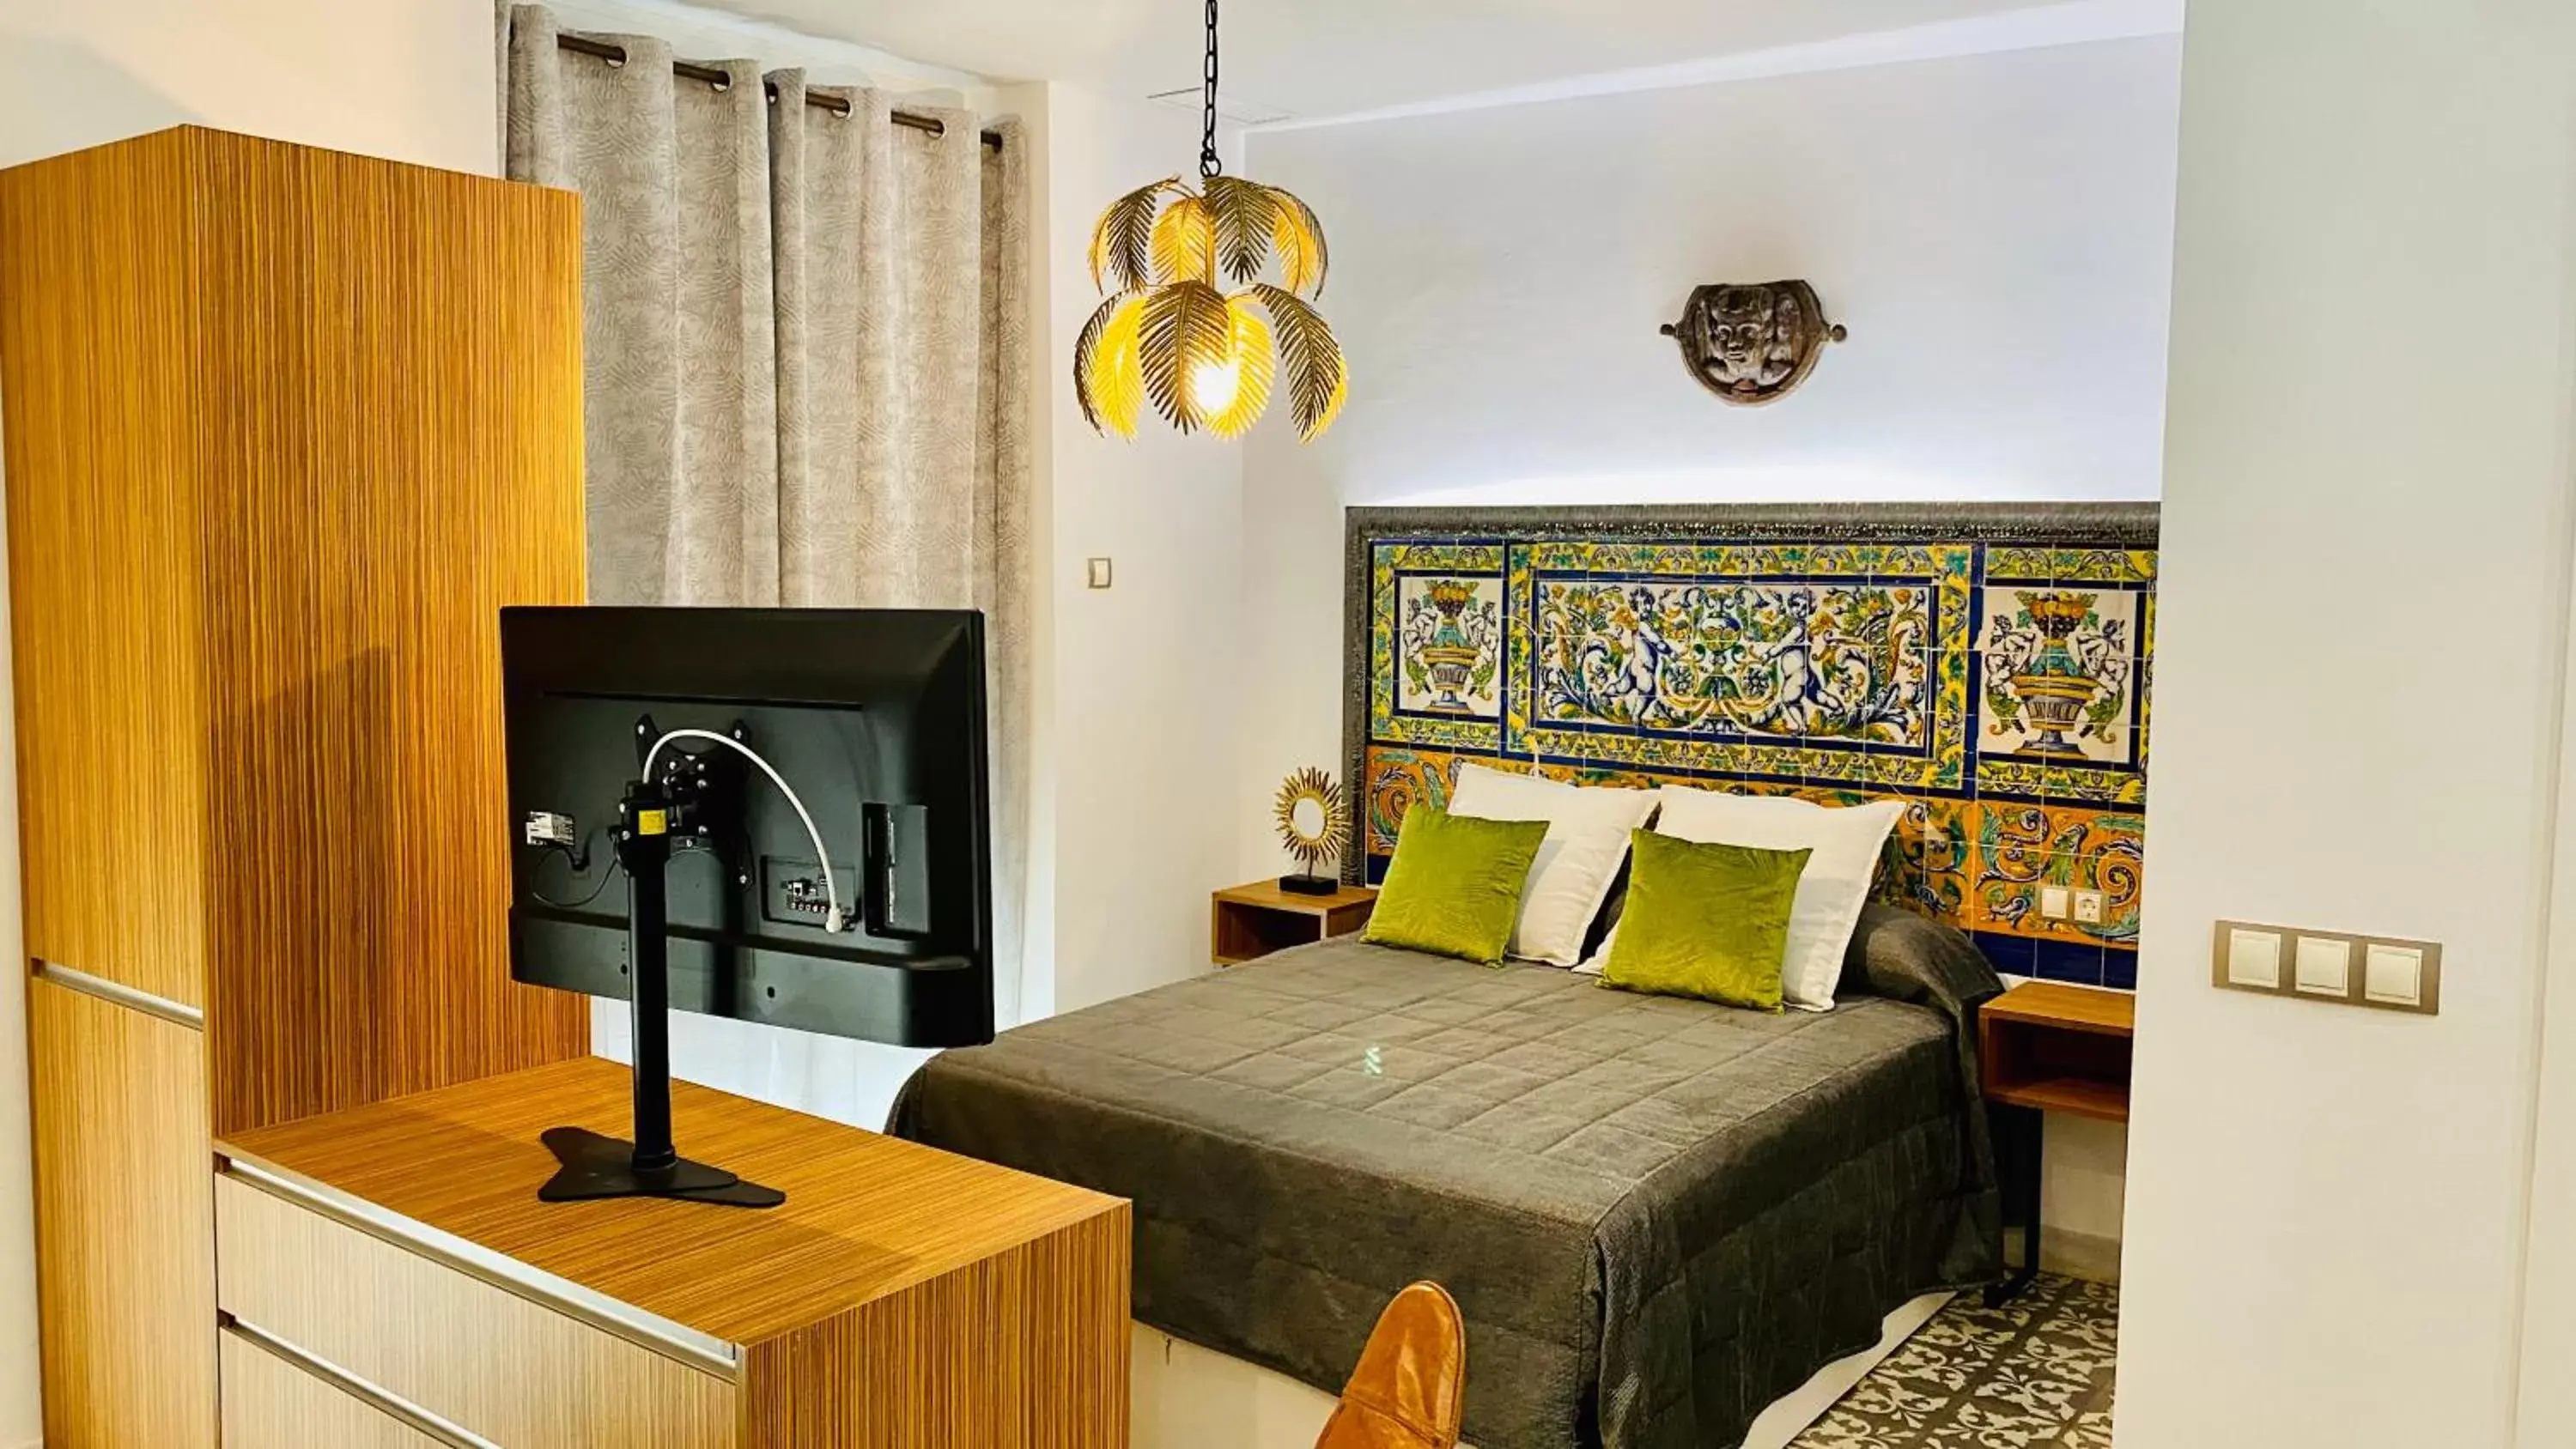 Decorative detail, Bed in Apartamentos "El Escondite de Triana"